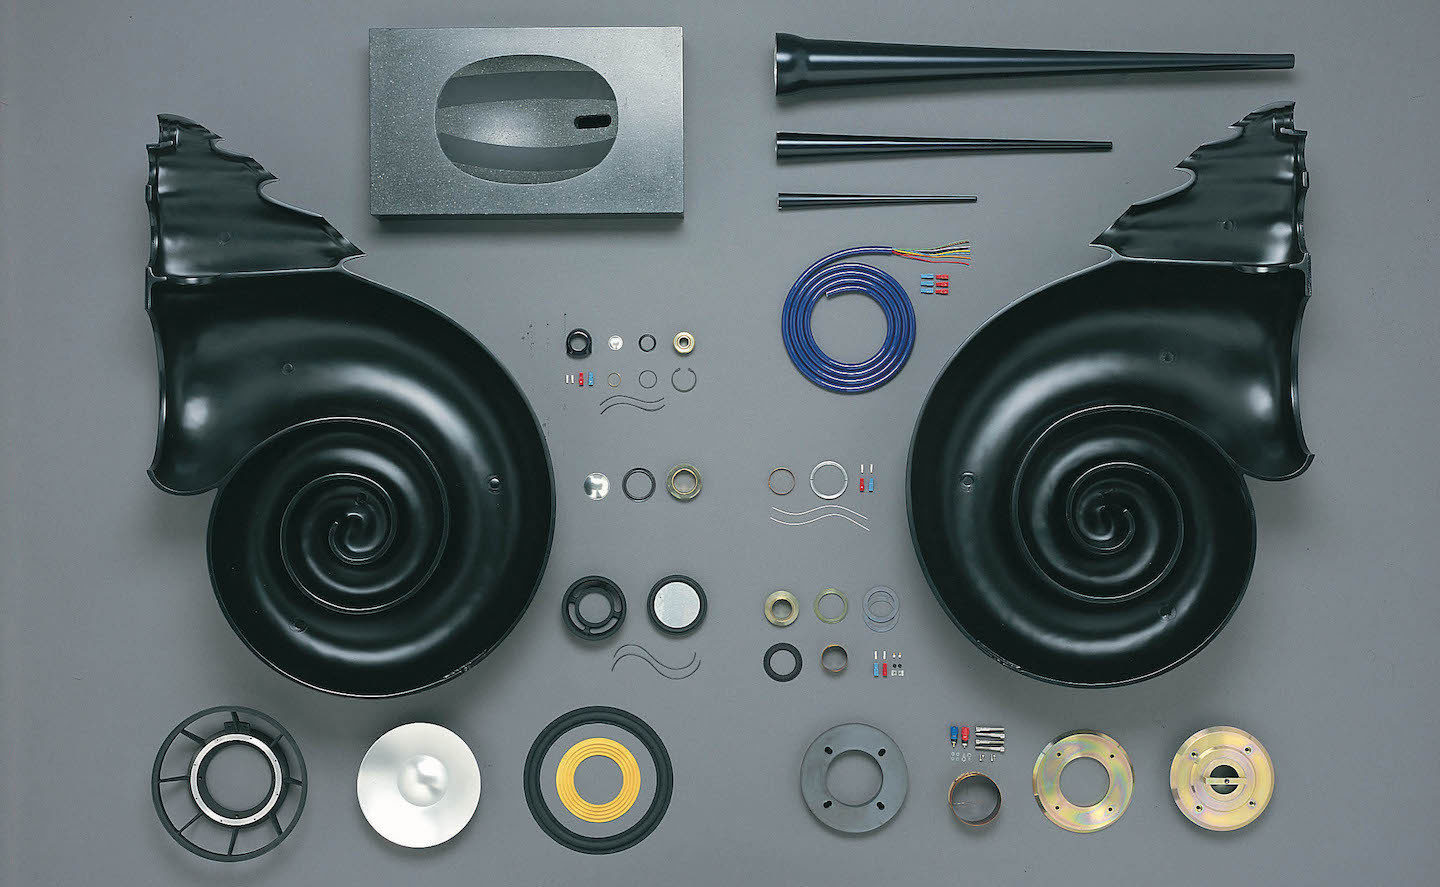 Nautilus від Bowers & Wilkins - одна з найбільш незвичайних, дорогих і авторитетних в плані звучання акустичних систем